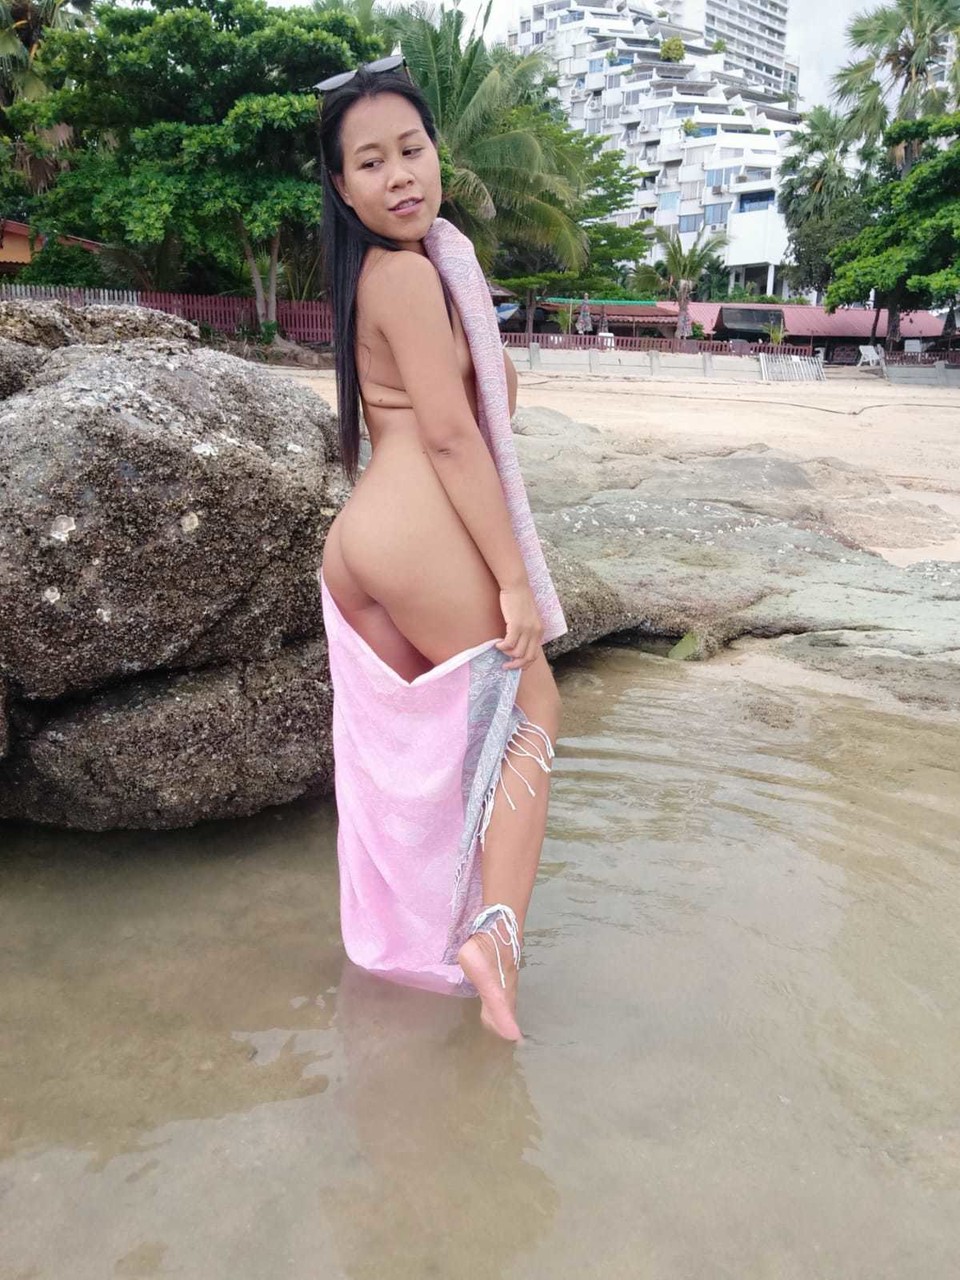 Gorgeous Asian amateur Kiki Asia shows her hot ass in a bikini at the beach foto porno #425545193 | TukTuk Thailand Pics, Kiki Asia, Thai, porno móvil